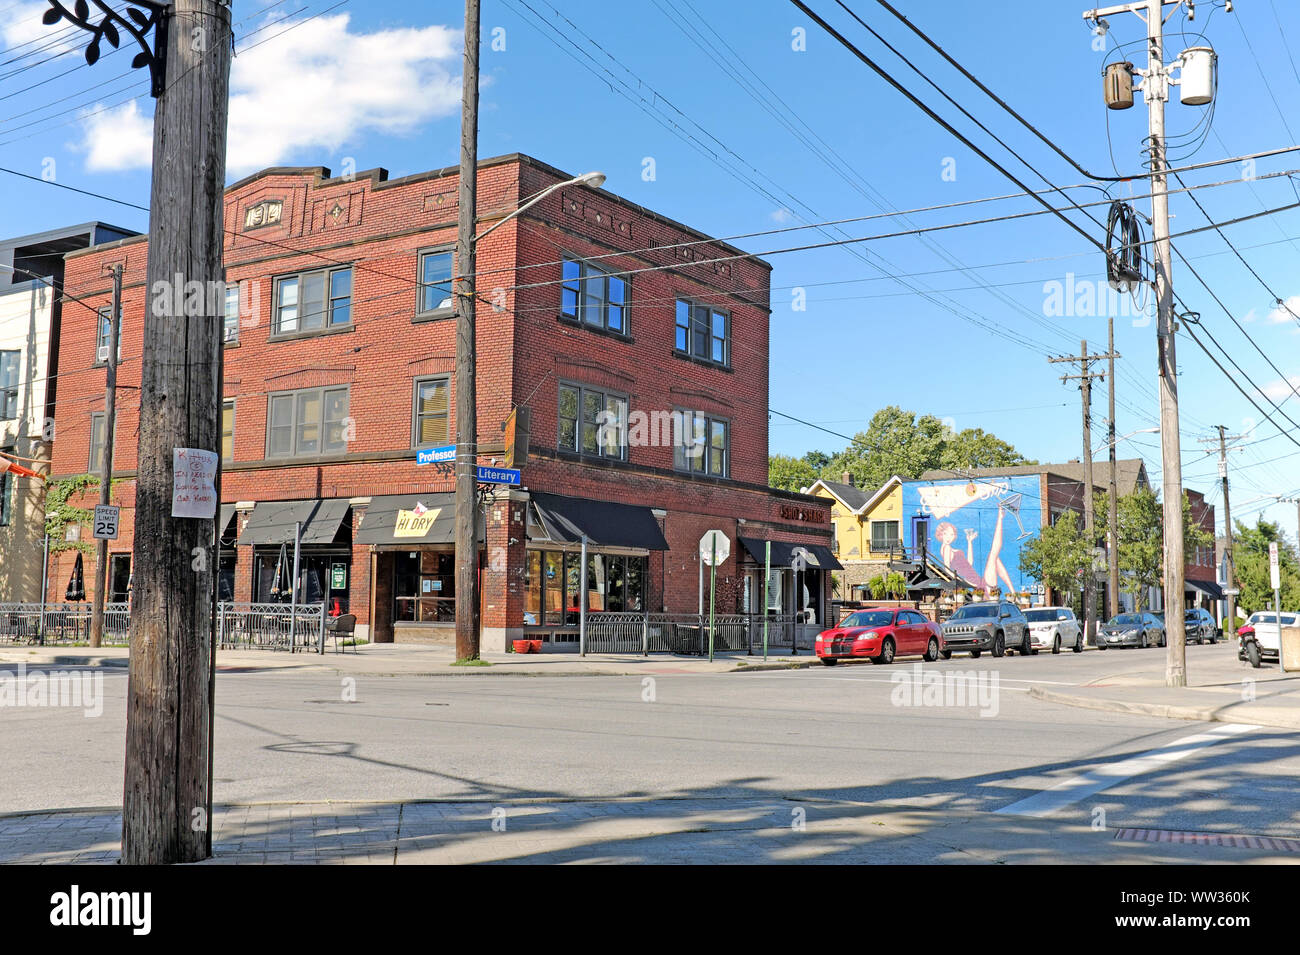 Die Ecke von Literary and Professor Roads liegt im Herzen des Viertels Tremont, einem gentrifizierten Gebiet in der Nähe der Innenstadt von Cleveland, Ohio, USA. Stockfoto